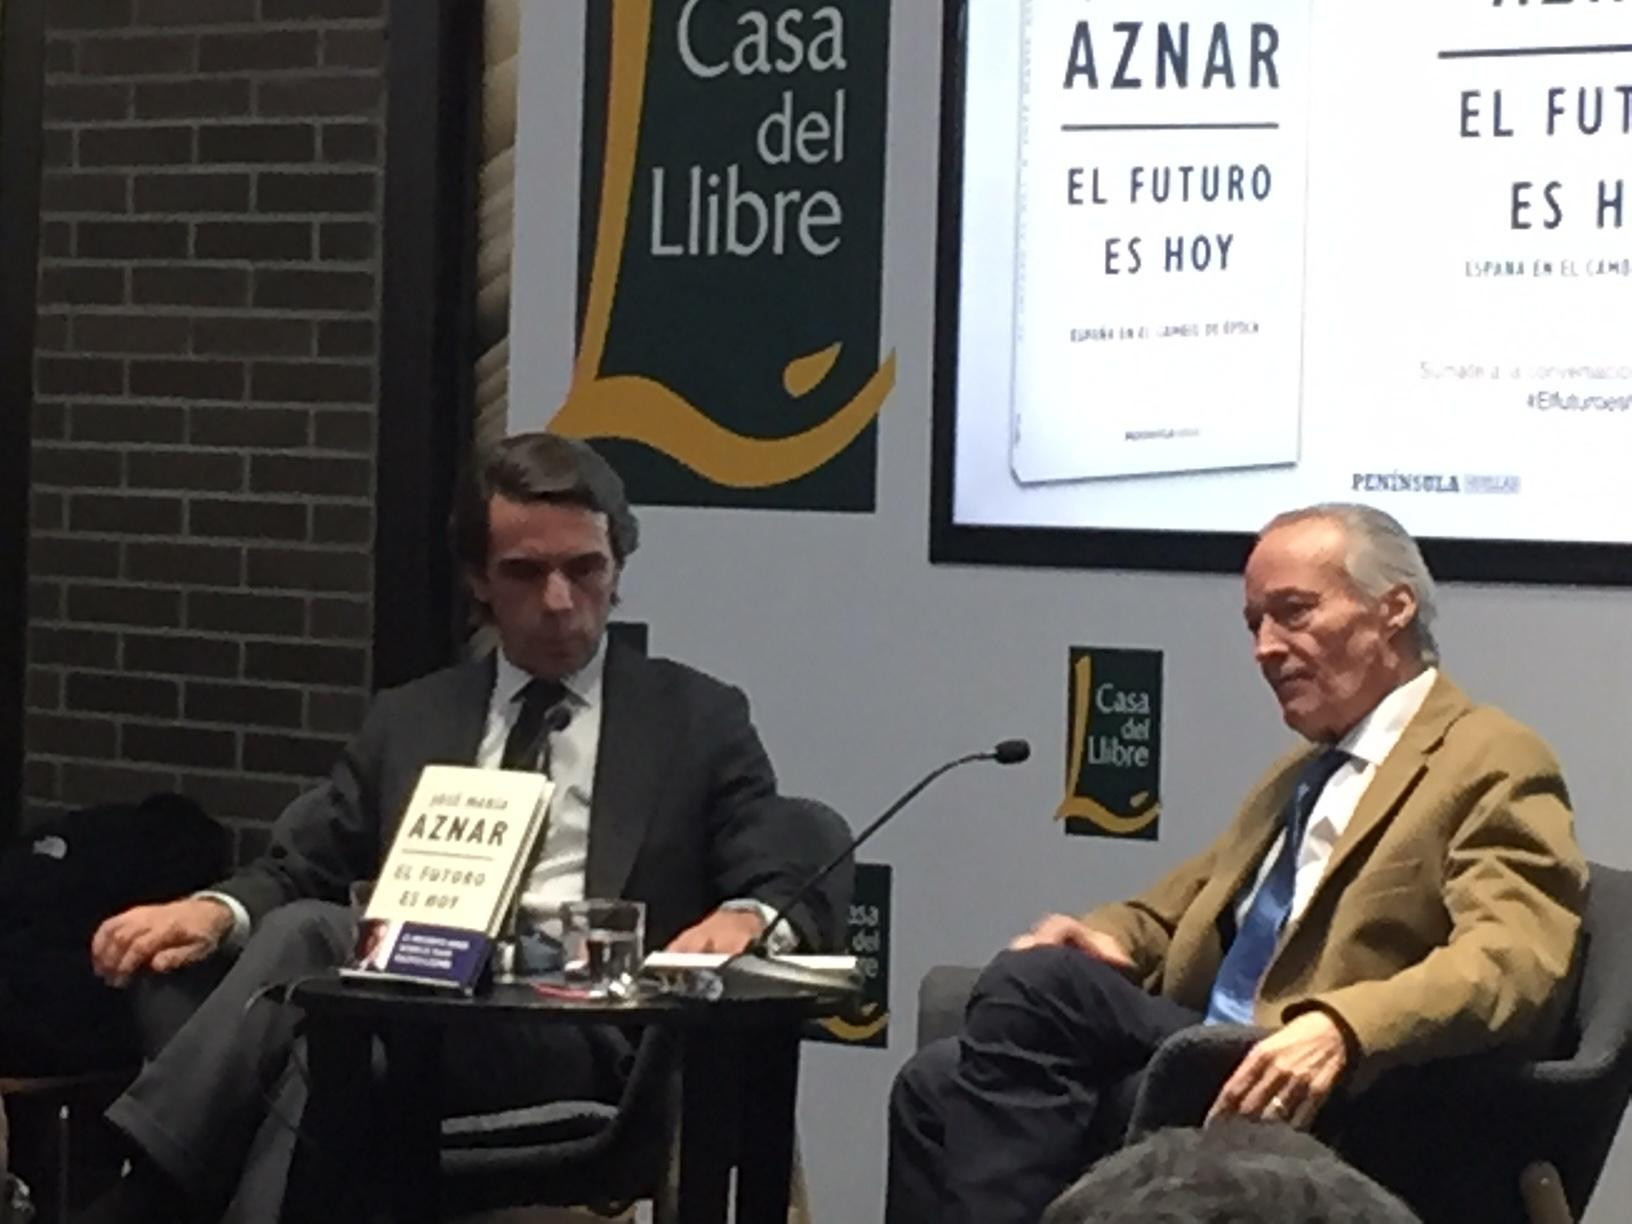 José María Aznar y Josep Piqué, en la presentación del libro 'El futuro es hoy' /CG